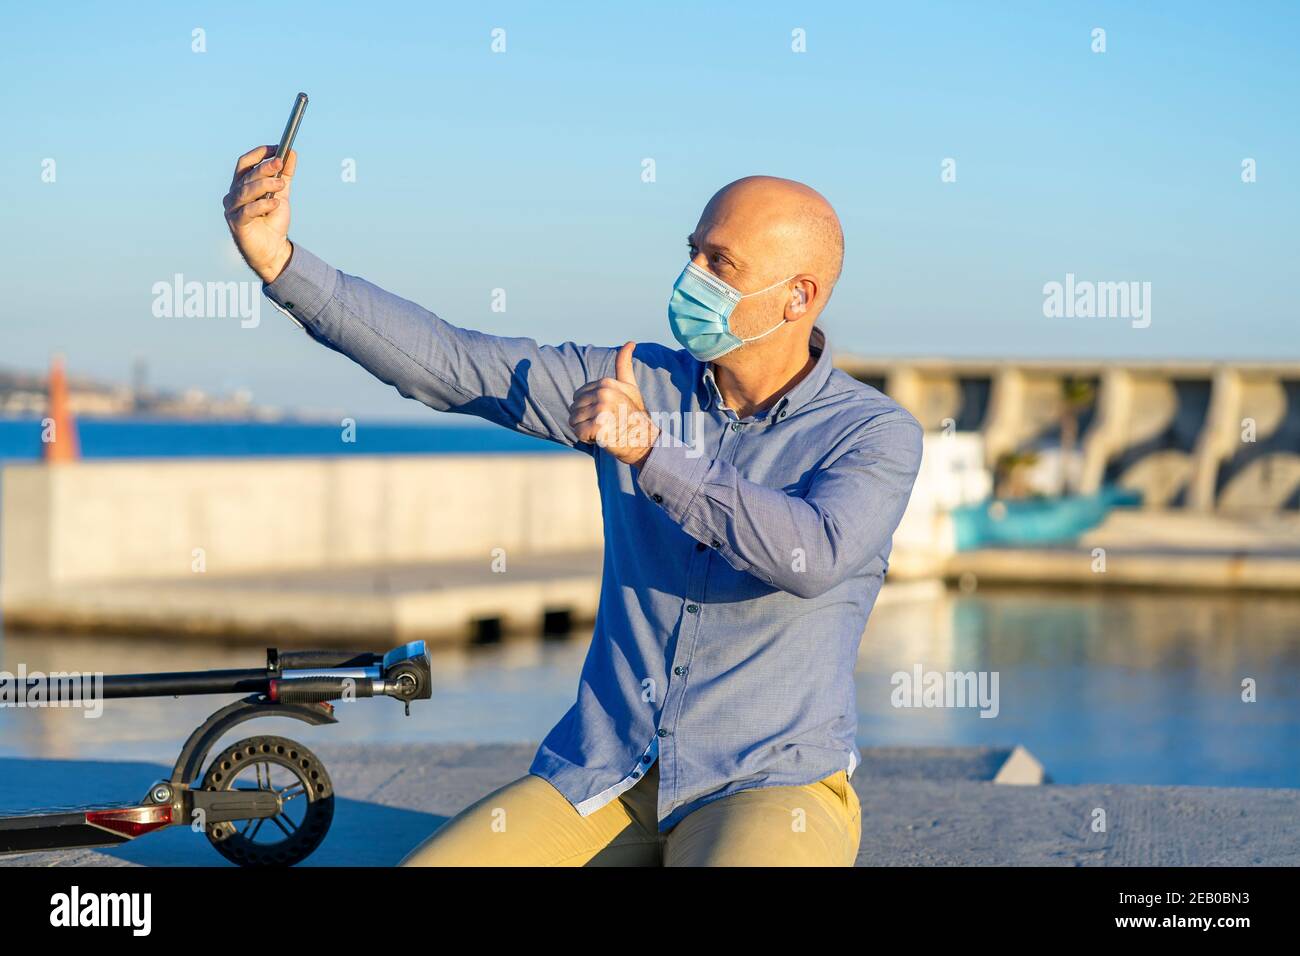 Reifer Mann nimmt Selfie mit Handy und macht Daumen nach oben Geste, trägt Maske. Sie können das Meer im Hintergrund sehen. Abendlicht. Horizontal p Stockfoto